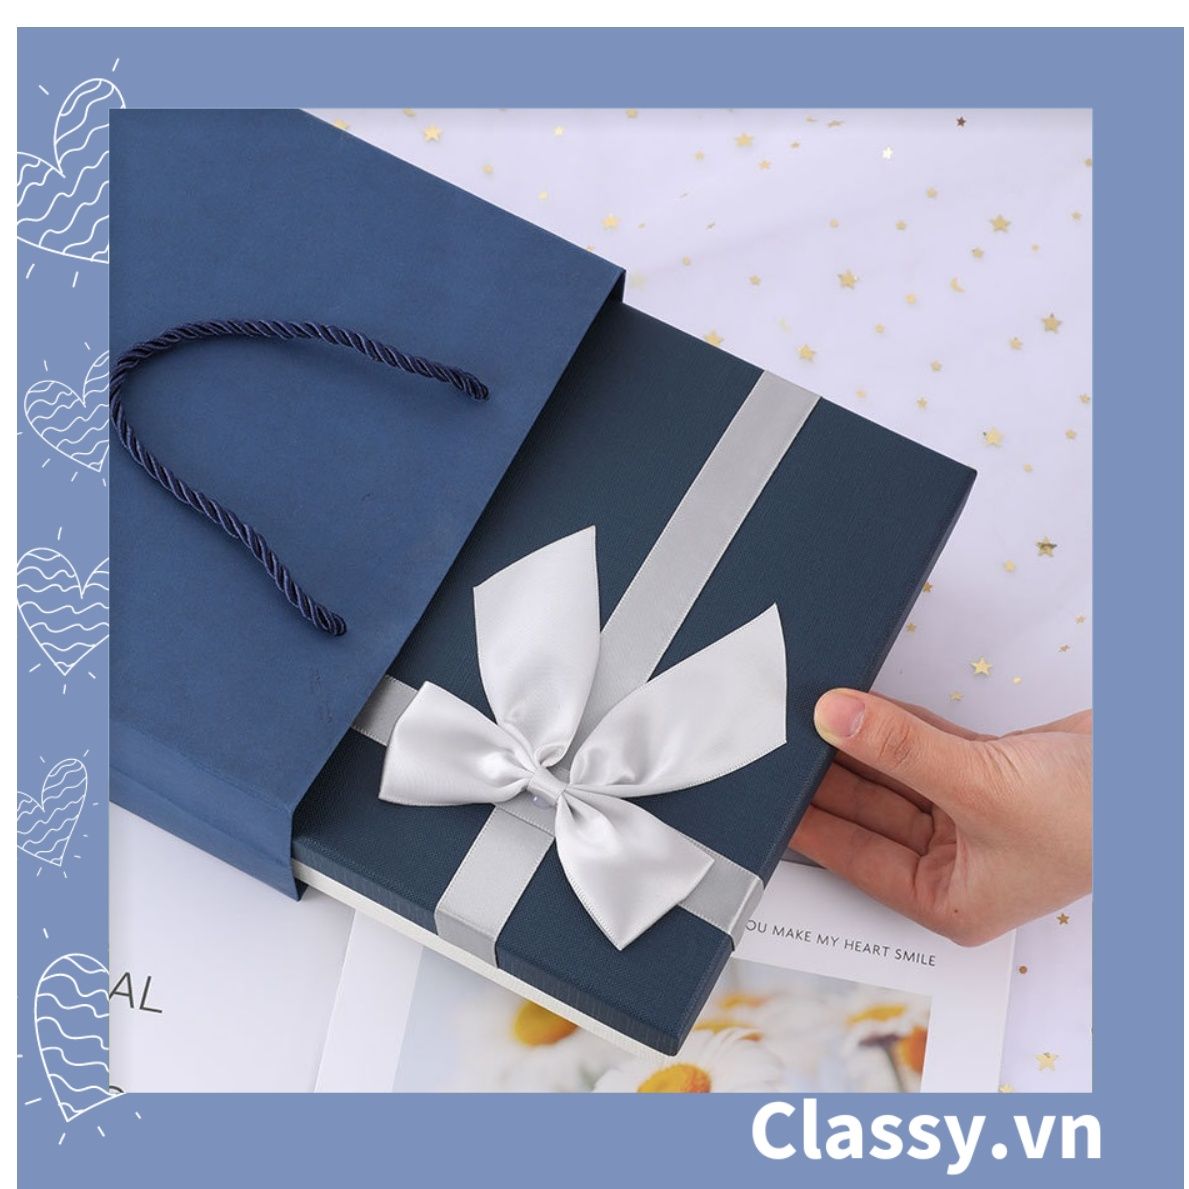  Classy Hộp quà tặng tông xanh xám sang trọng, chất liệu giấy cứng cáp Q1558 